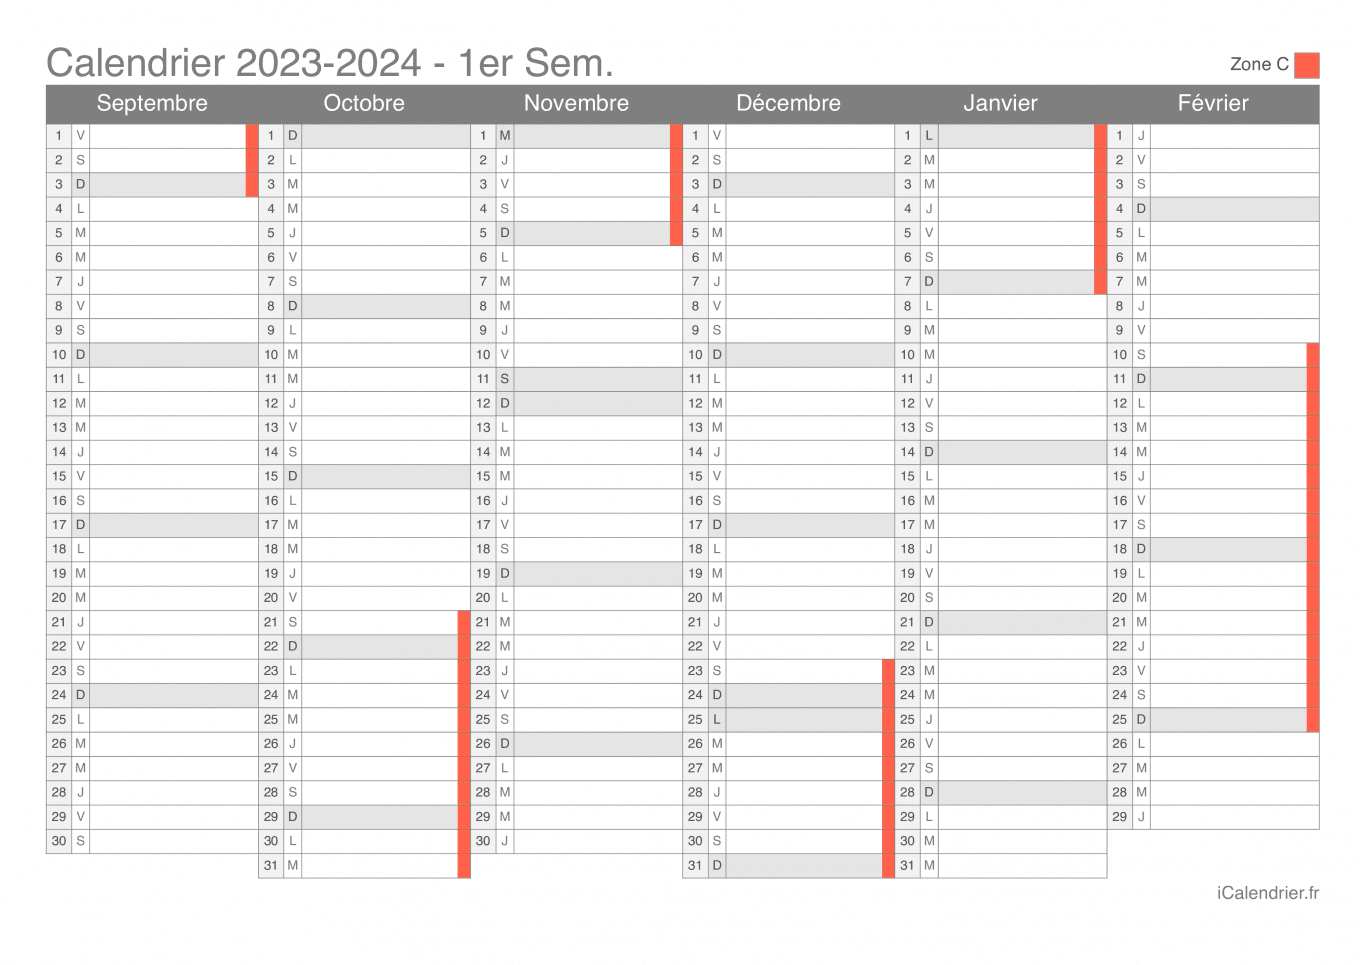 Calendrier des vacances scolaires 2023-2024 par semestre de la zone C